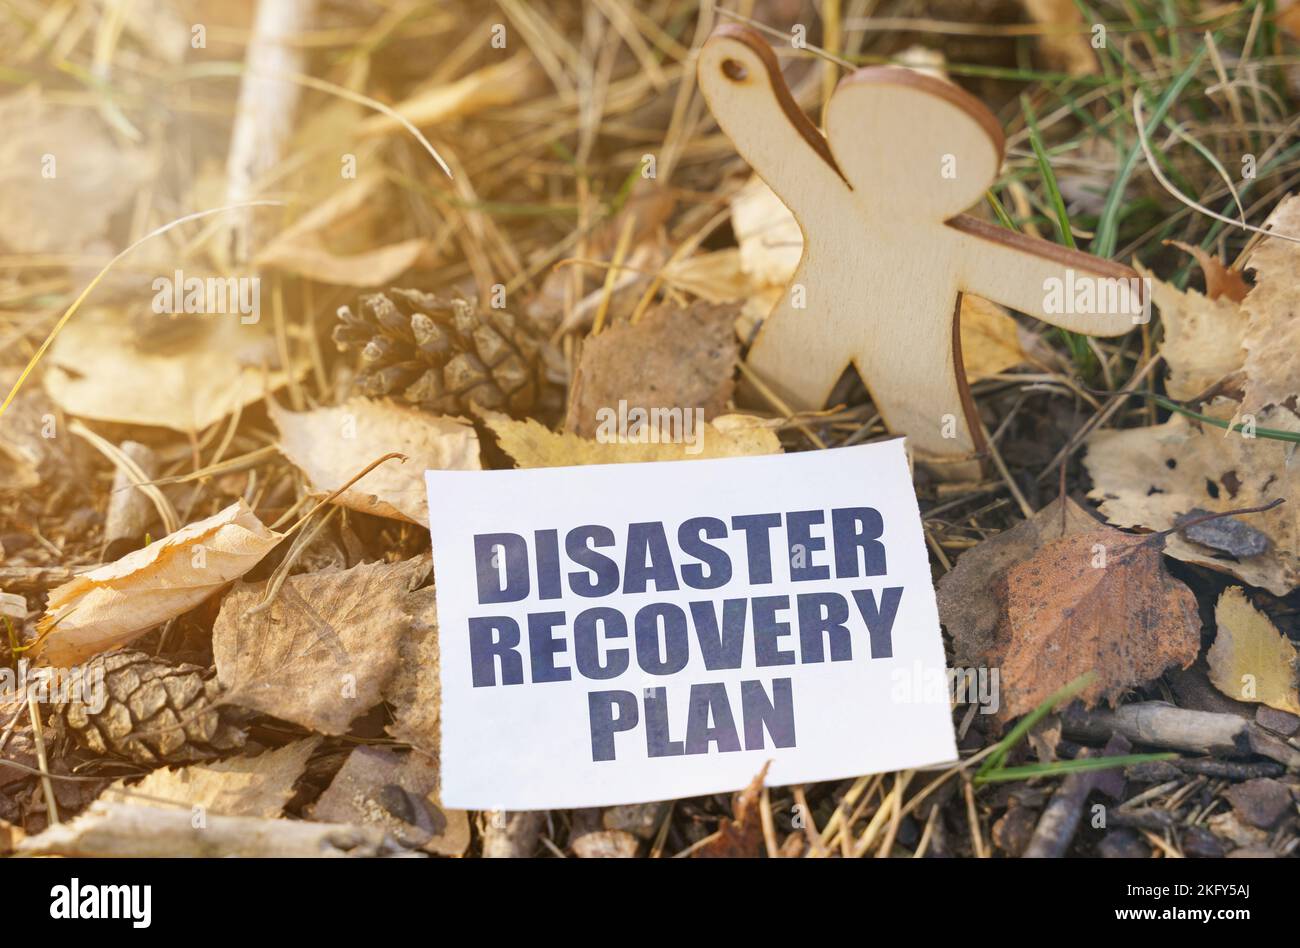 Ökologie. Auf dem Boden unter den Blättern in der Nähe der Holzfigur eines Mannes Papier mit der Aufschrift - Disaster Recovery Plan Stockfoto